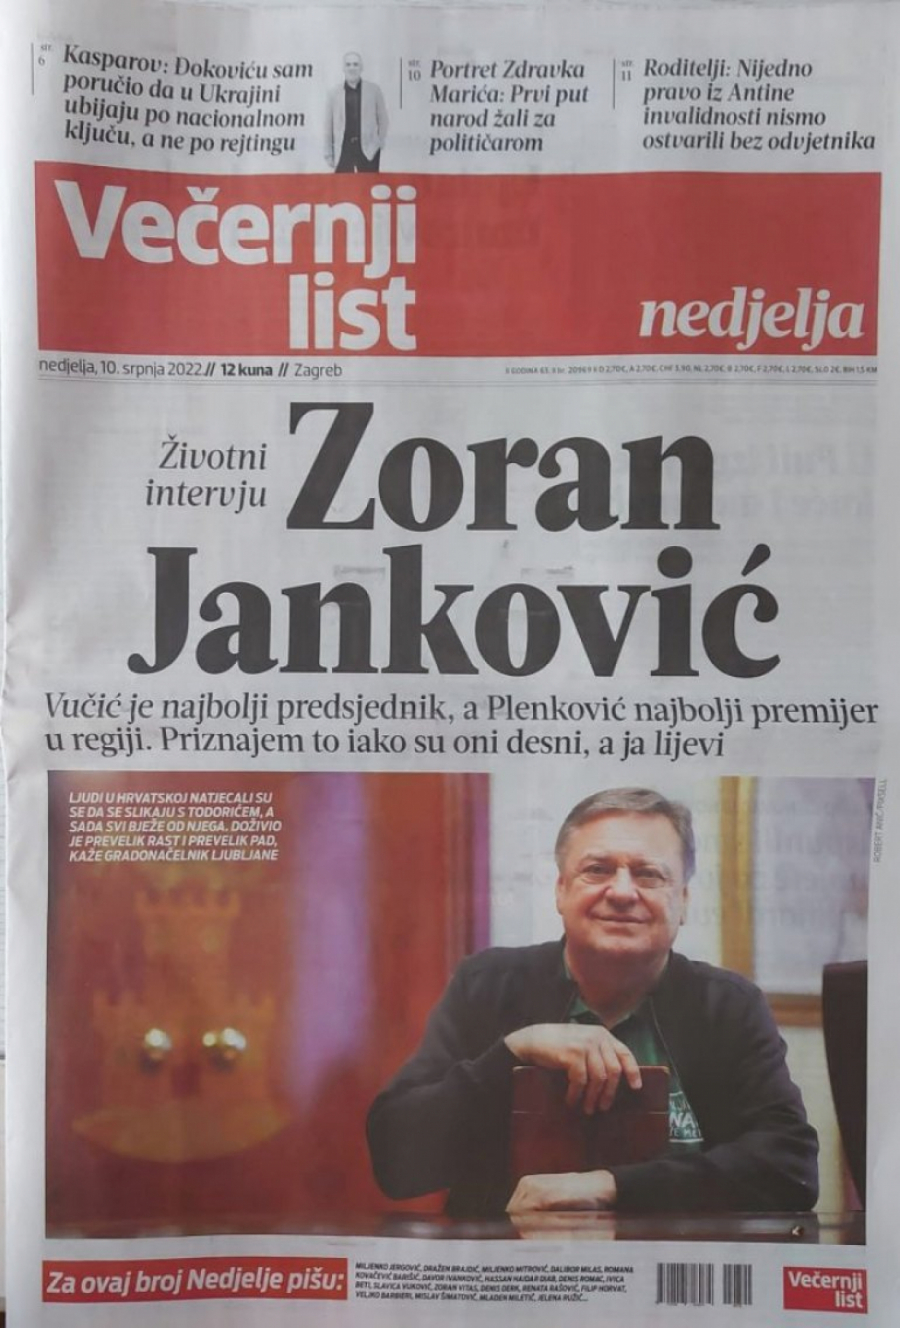 VUČIĆ JE NAJBOLJI PREDSEDNIK U REGIONU Gradonačelnik Ljubljane Zoran Janković u intervjuu za hrvatske medije